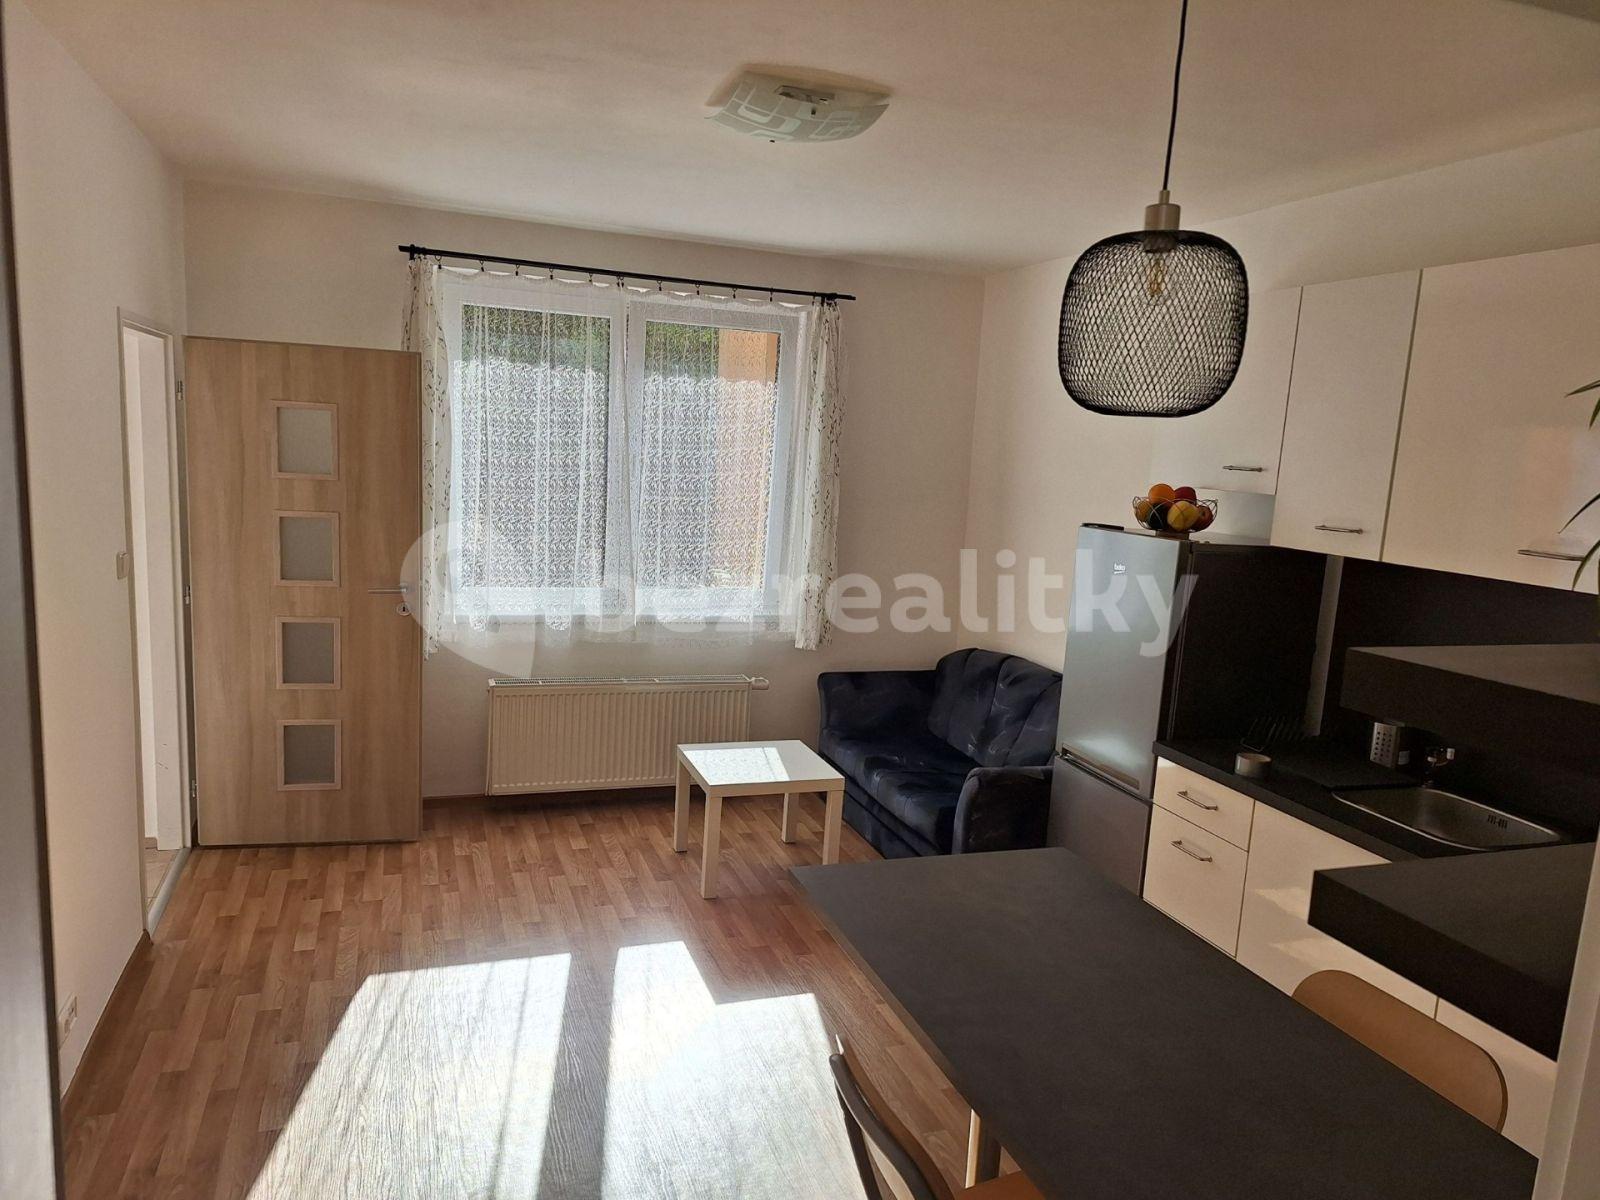 1 bedroom with open-plan kitchen flat to rent, 40 m², Starochodovská, Prague, Prague